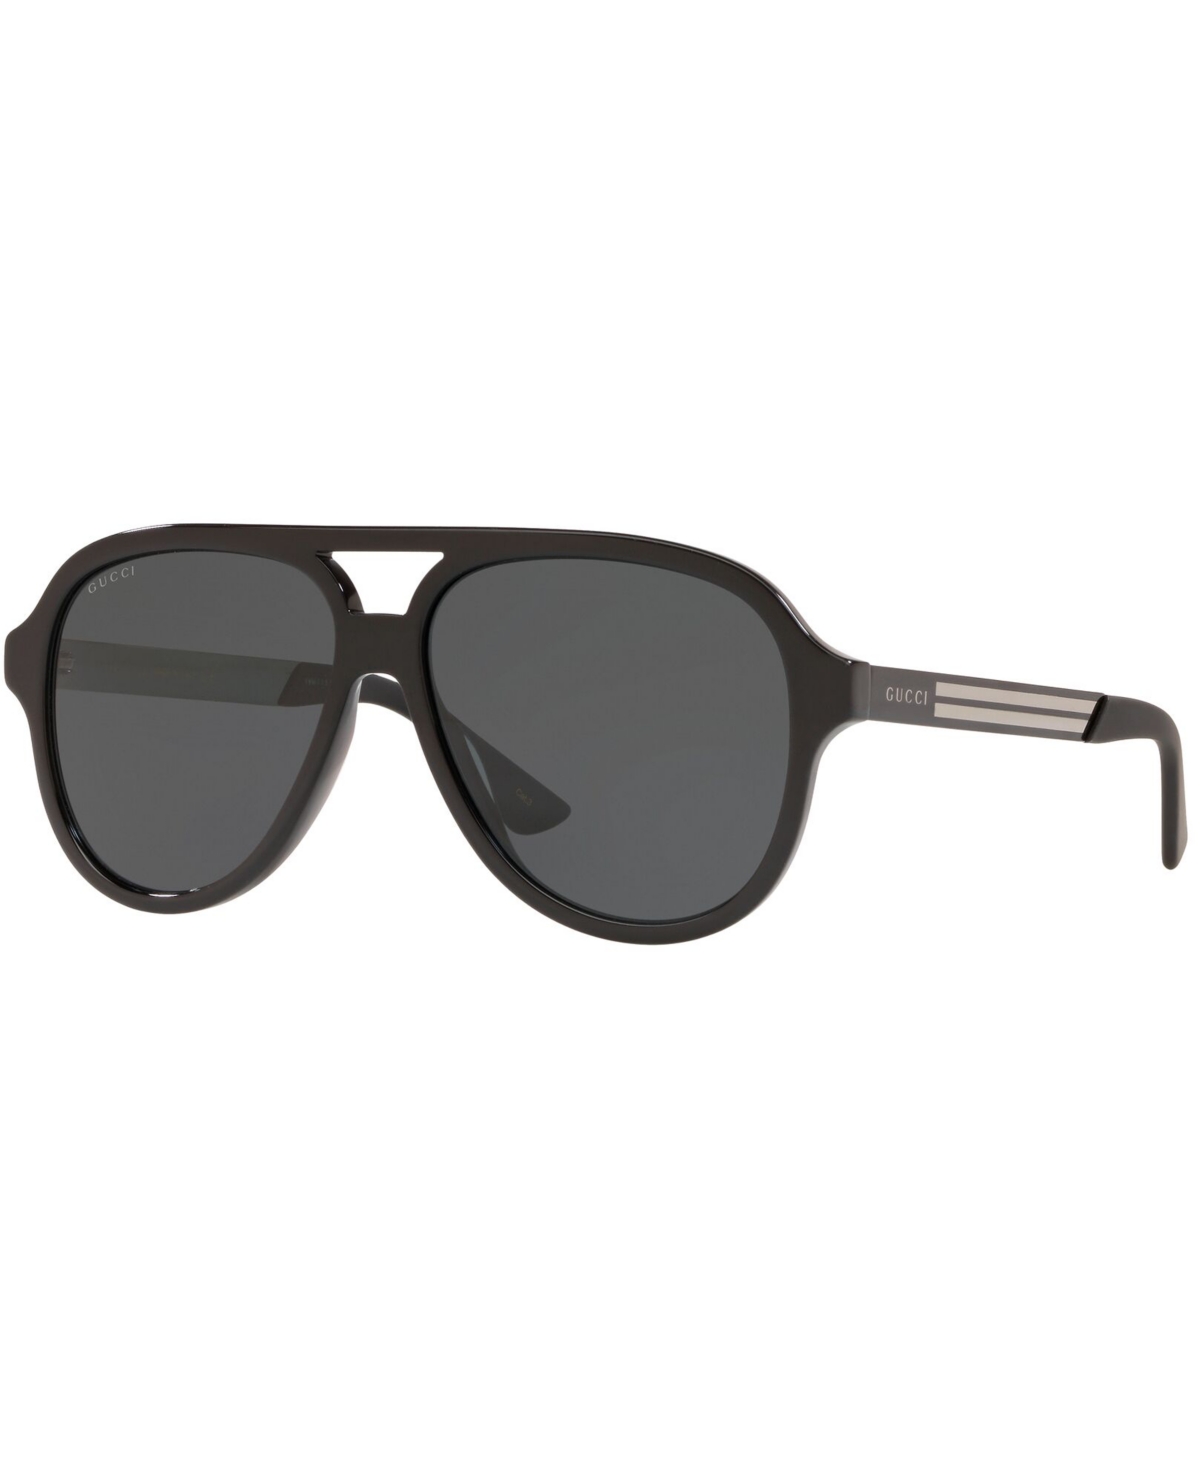 Gucci Men's Sunglasses, Gc001383 In Black Shiny,grey